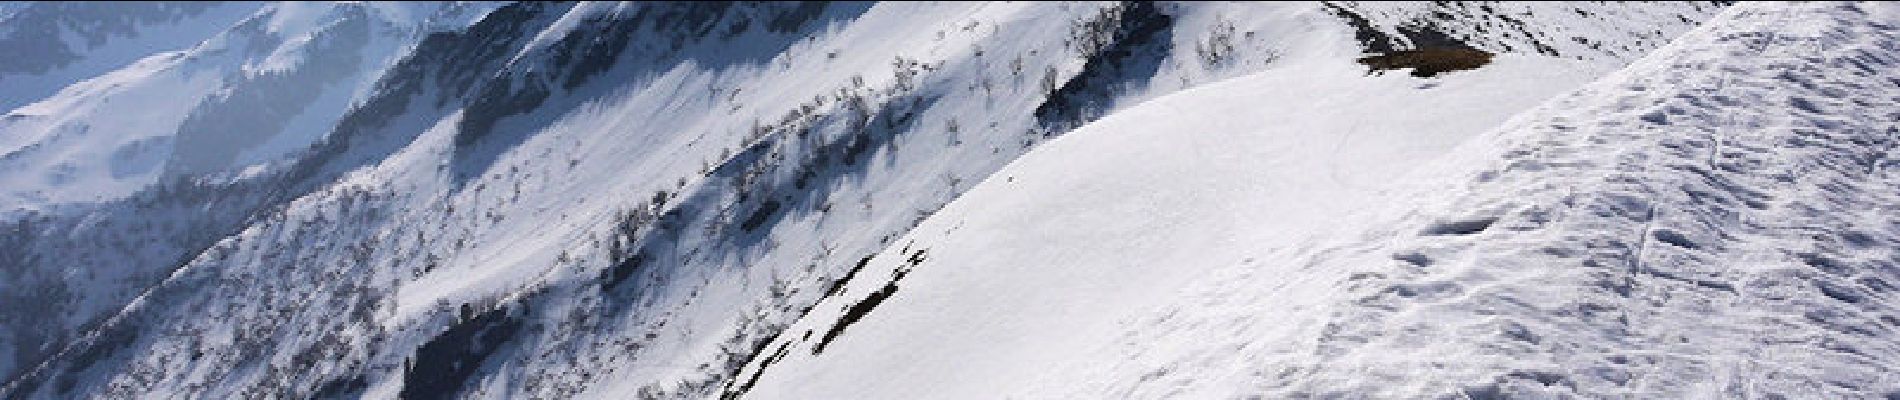 Trail Snowshoes Arvillard - Les crêtes de la Montagne d'Arvillard en raquettes - Photo